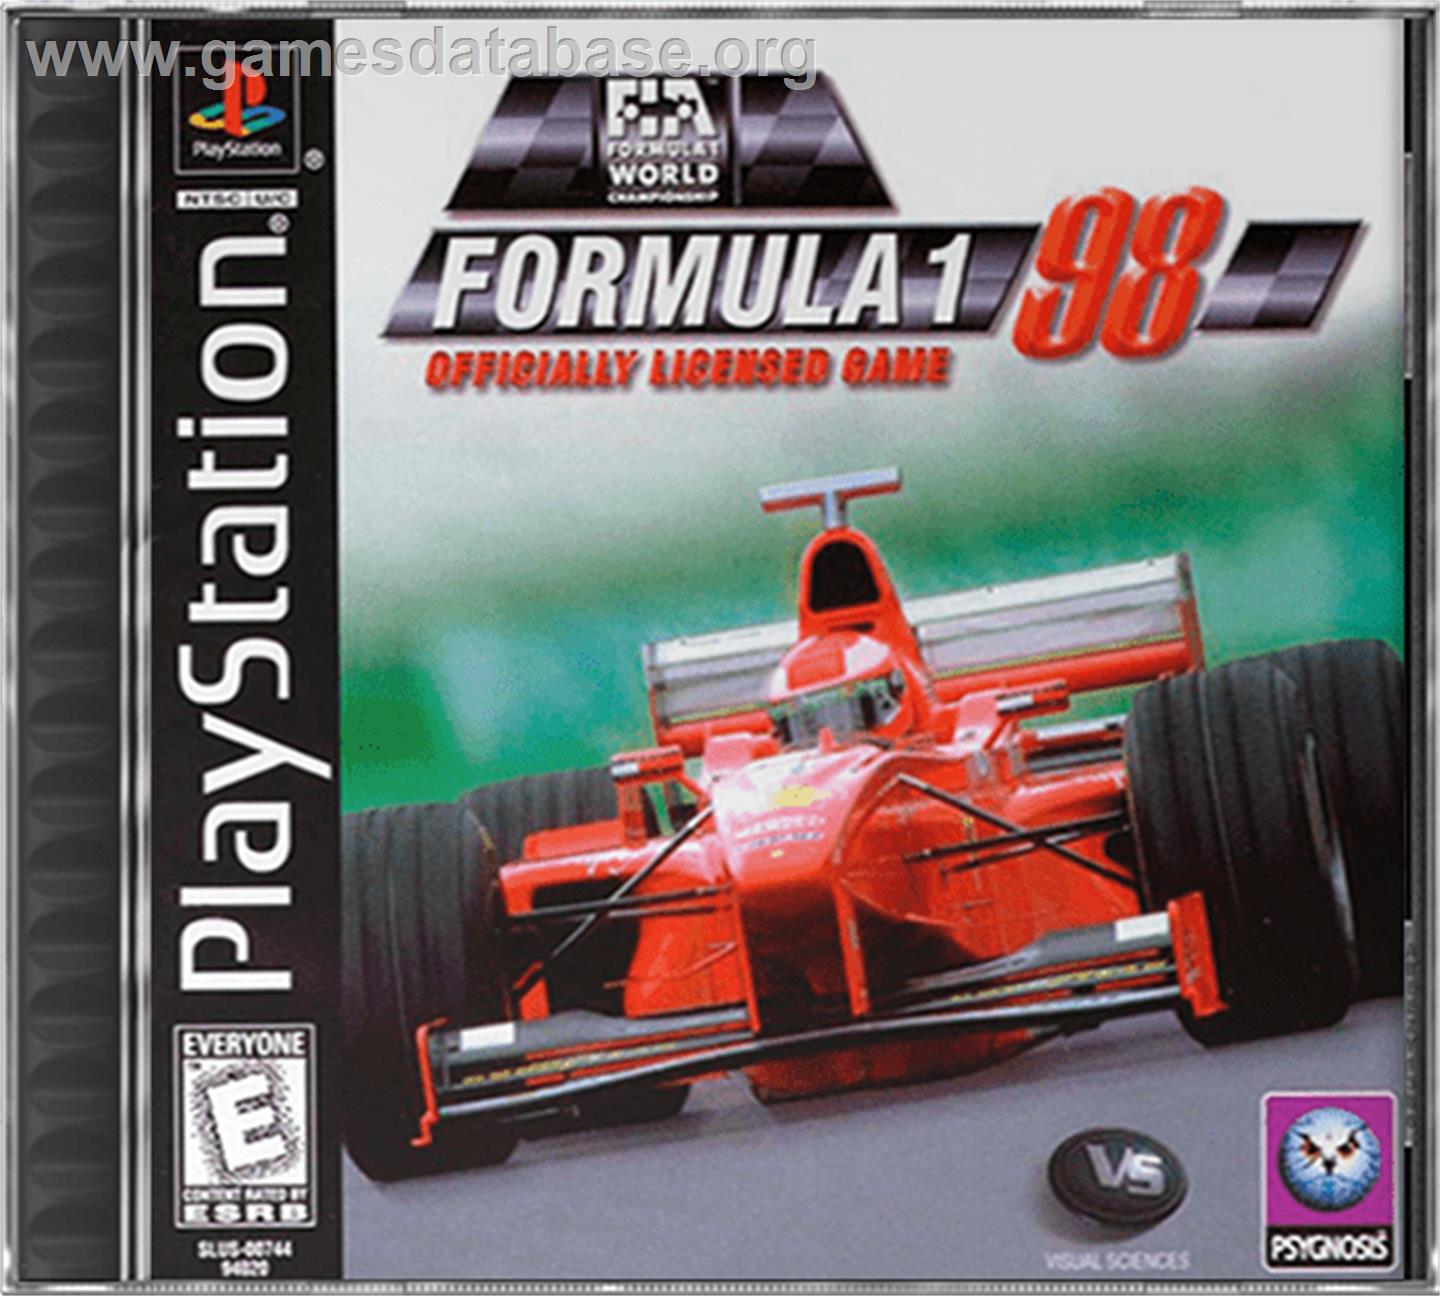 Formula 1 '98 - Sony Playstation - Artwork - Box